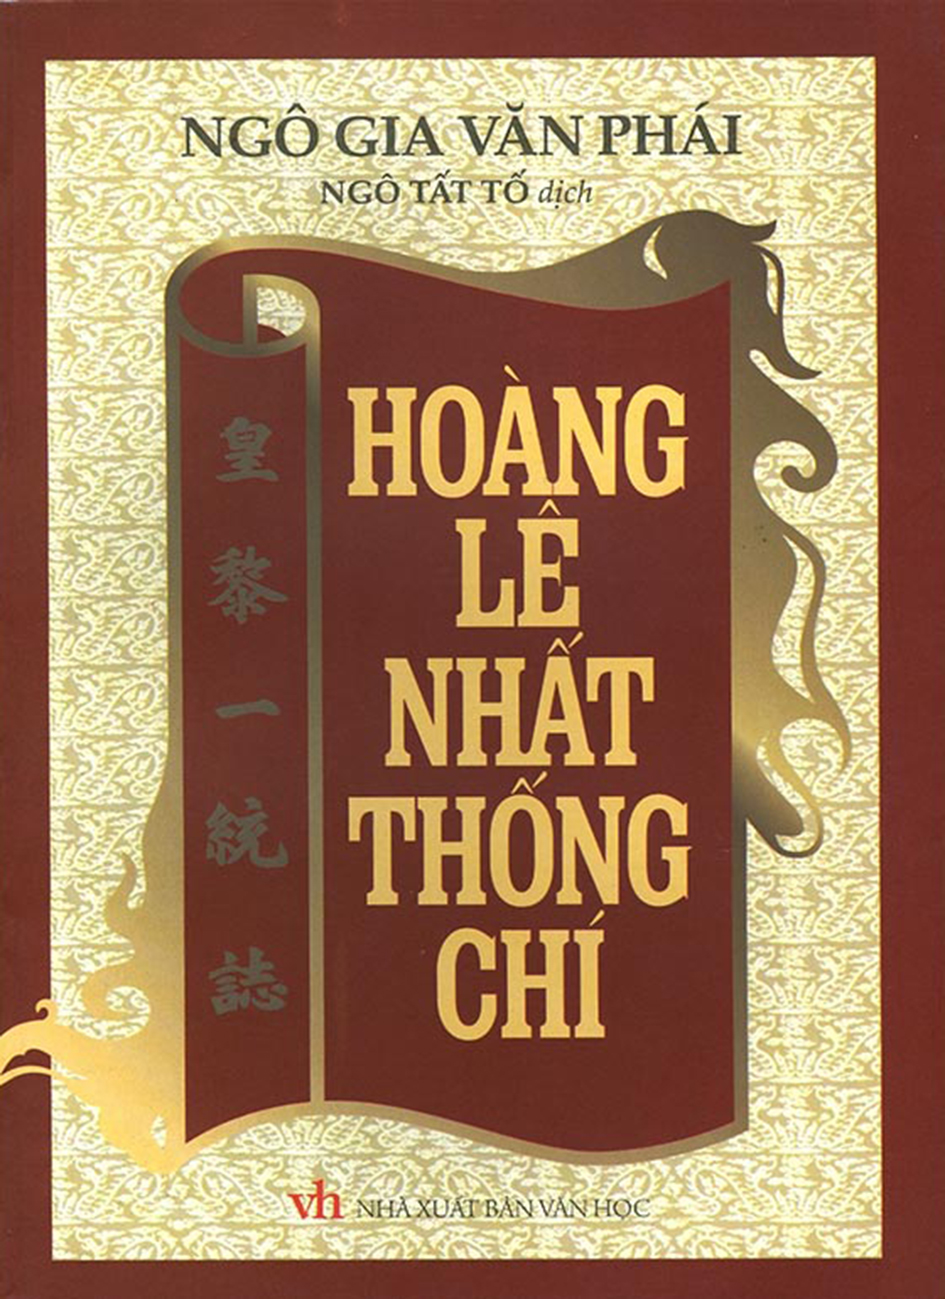 Hoang Le Nhat Thong Chi